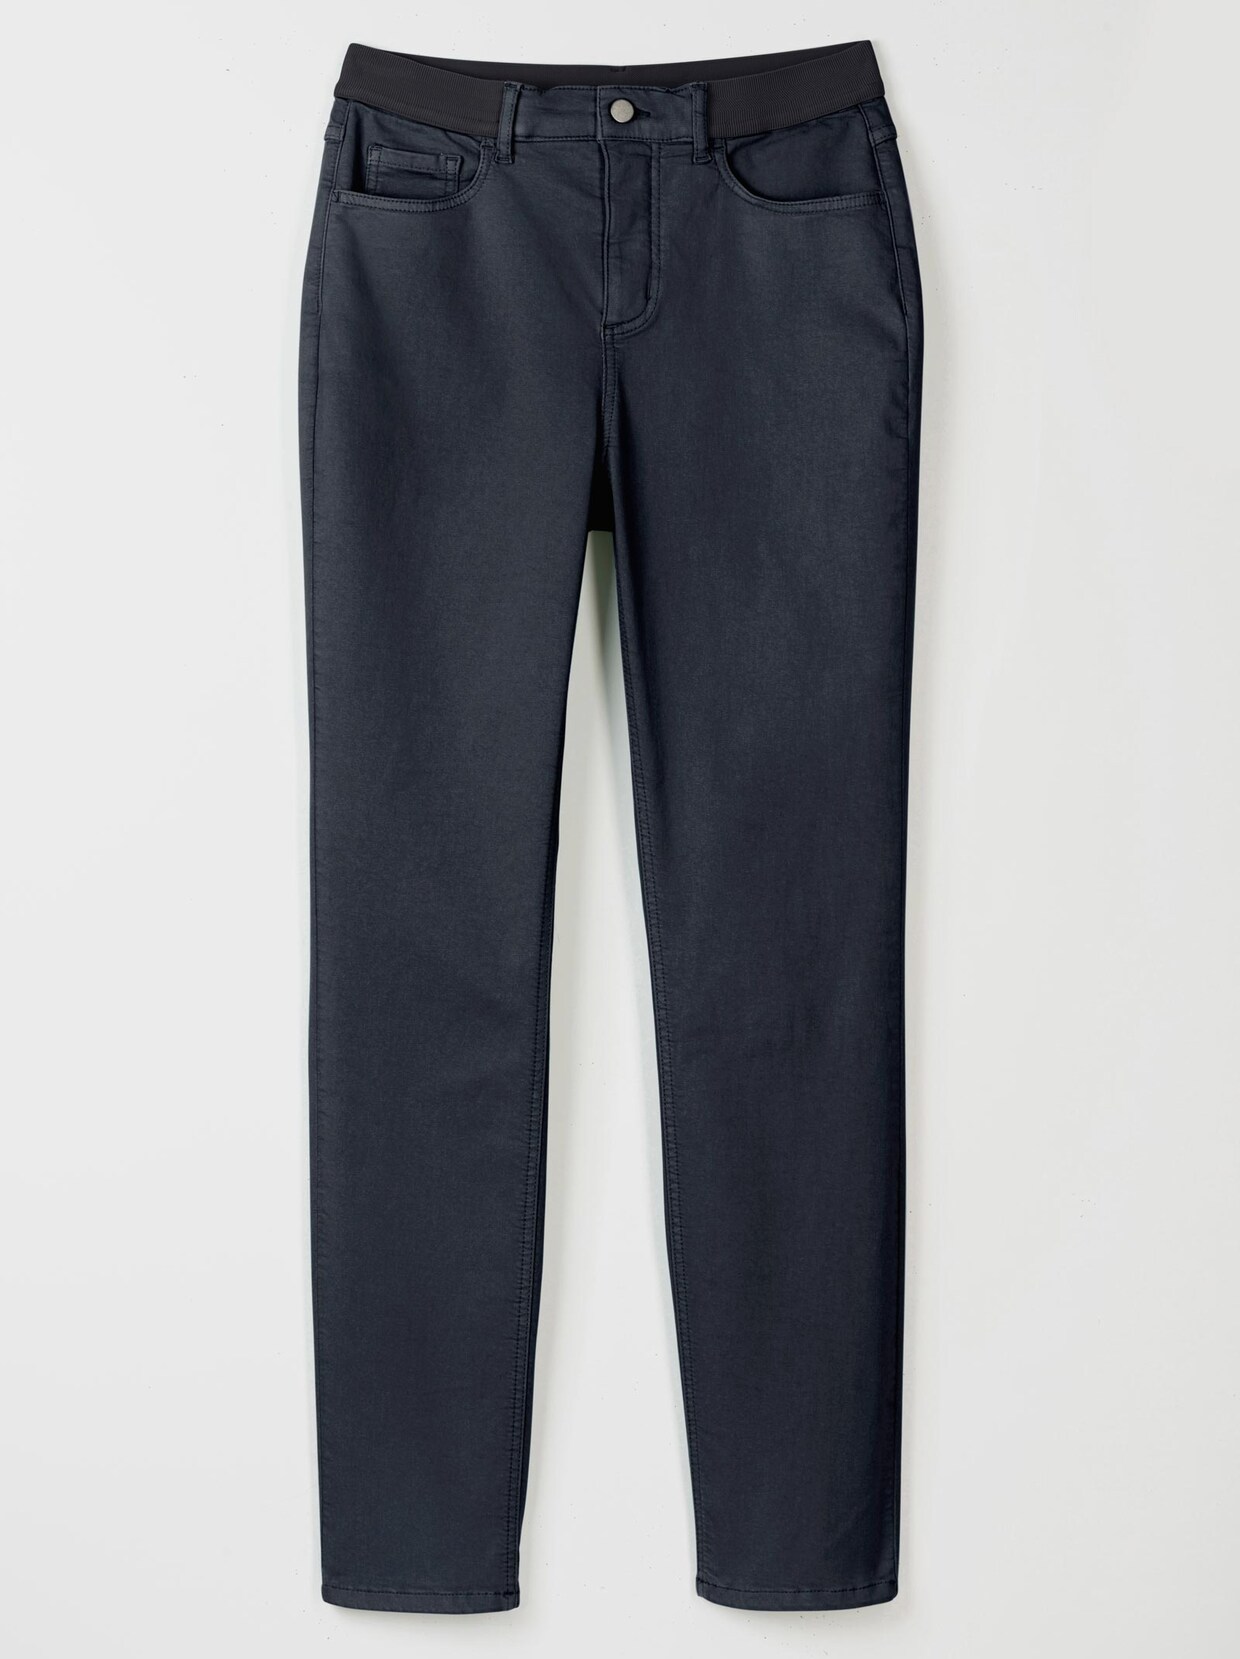 Stehmann Comfort line jeans - dark-blue